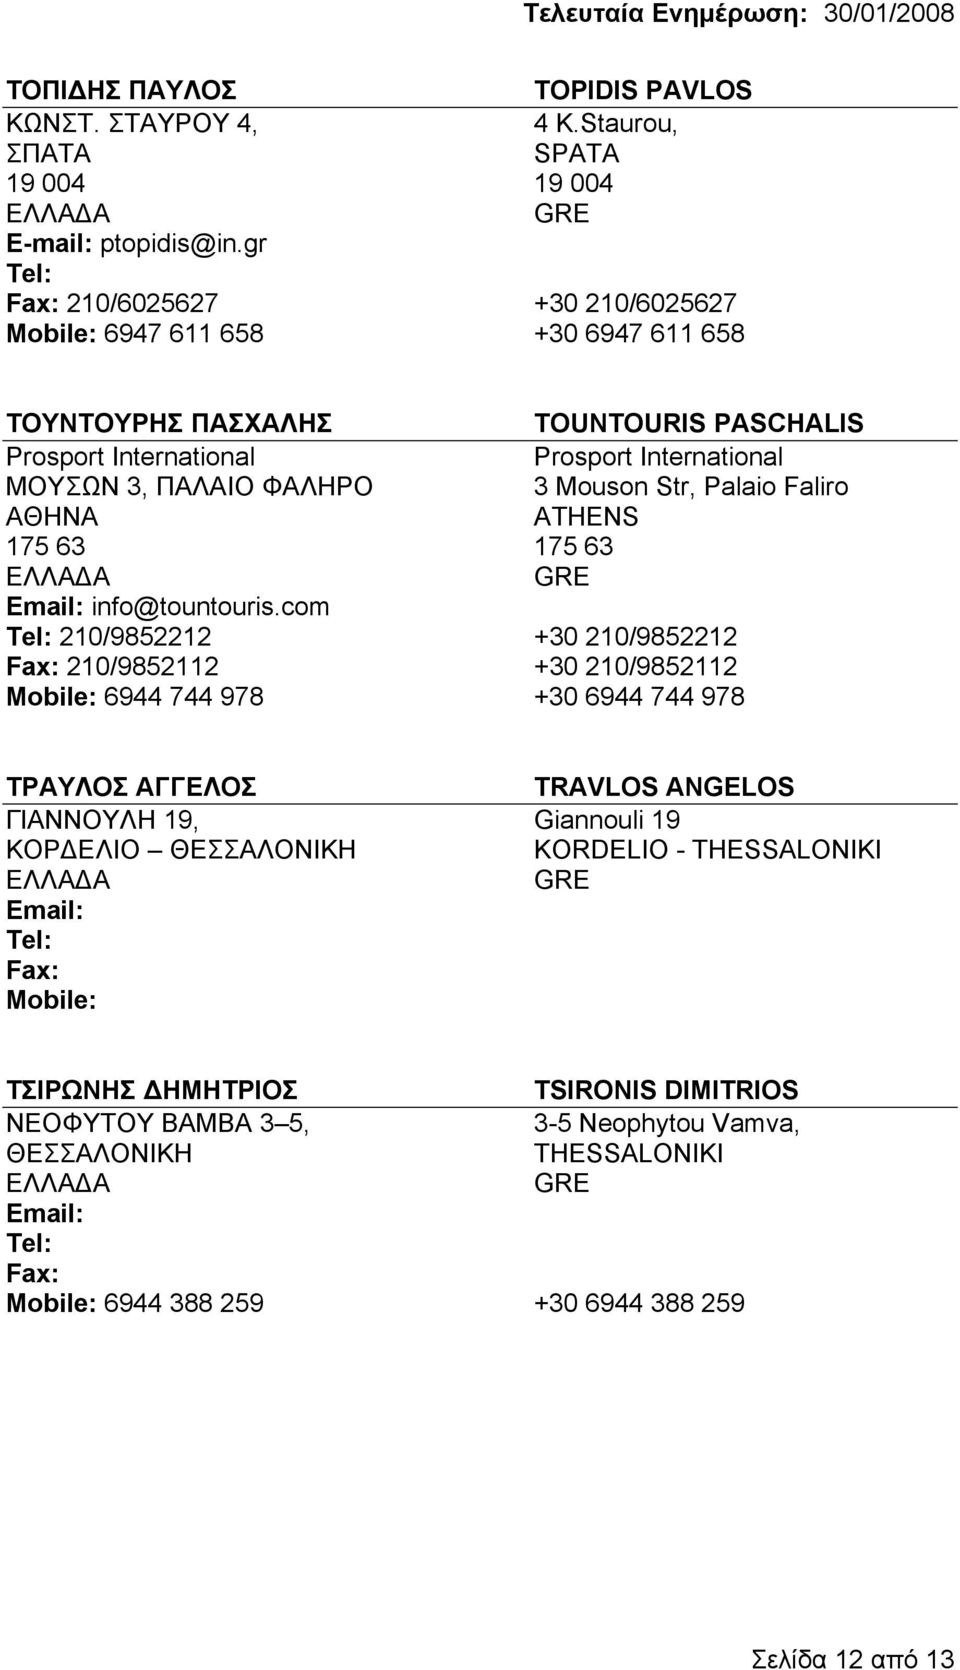 ΠΑΛΑΙΟ ΦΑΛΗΡΟ 3 Mouson Str, Palaio Faliro 175 63 175 63 Email: info@tountouris.